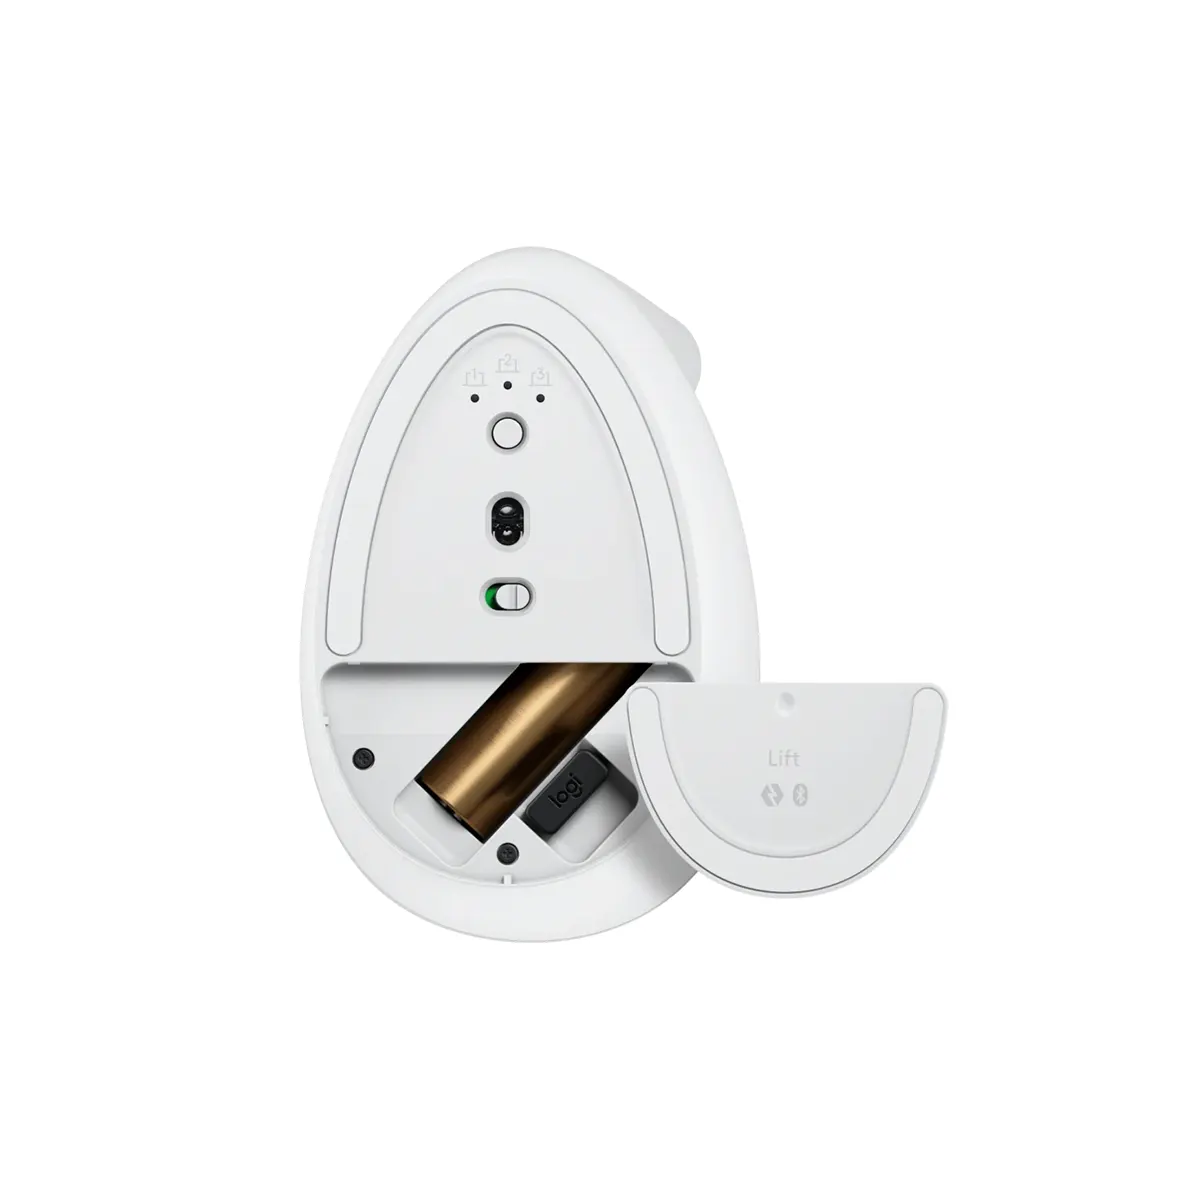 موس عمودی بی سیم لاجیتک مدل Logitech Lift Vertical Ergonomic Wireless Mouse رنگ سفید (5)